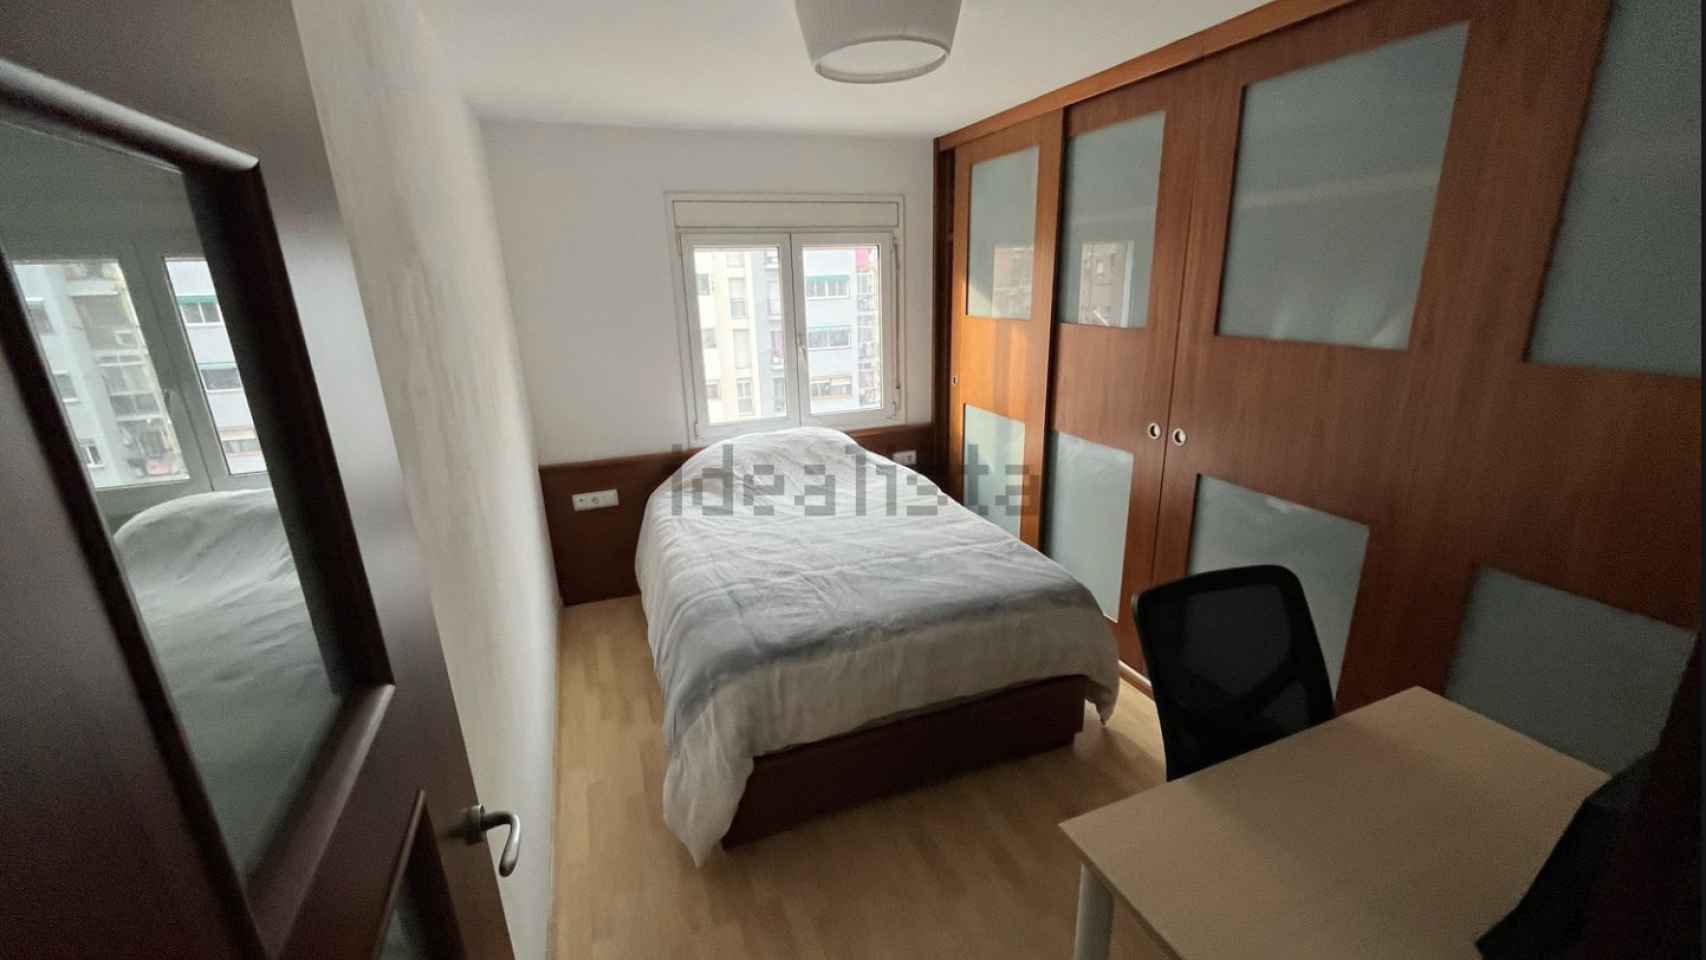 Una habitación en alquiler por 500 euros mensuales en Barcelona